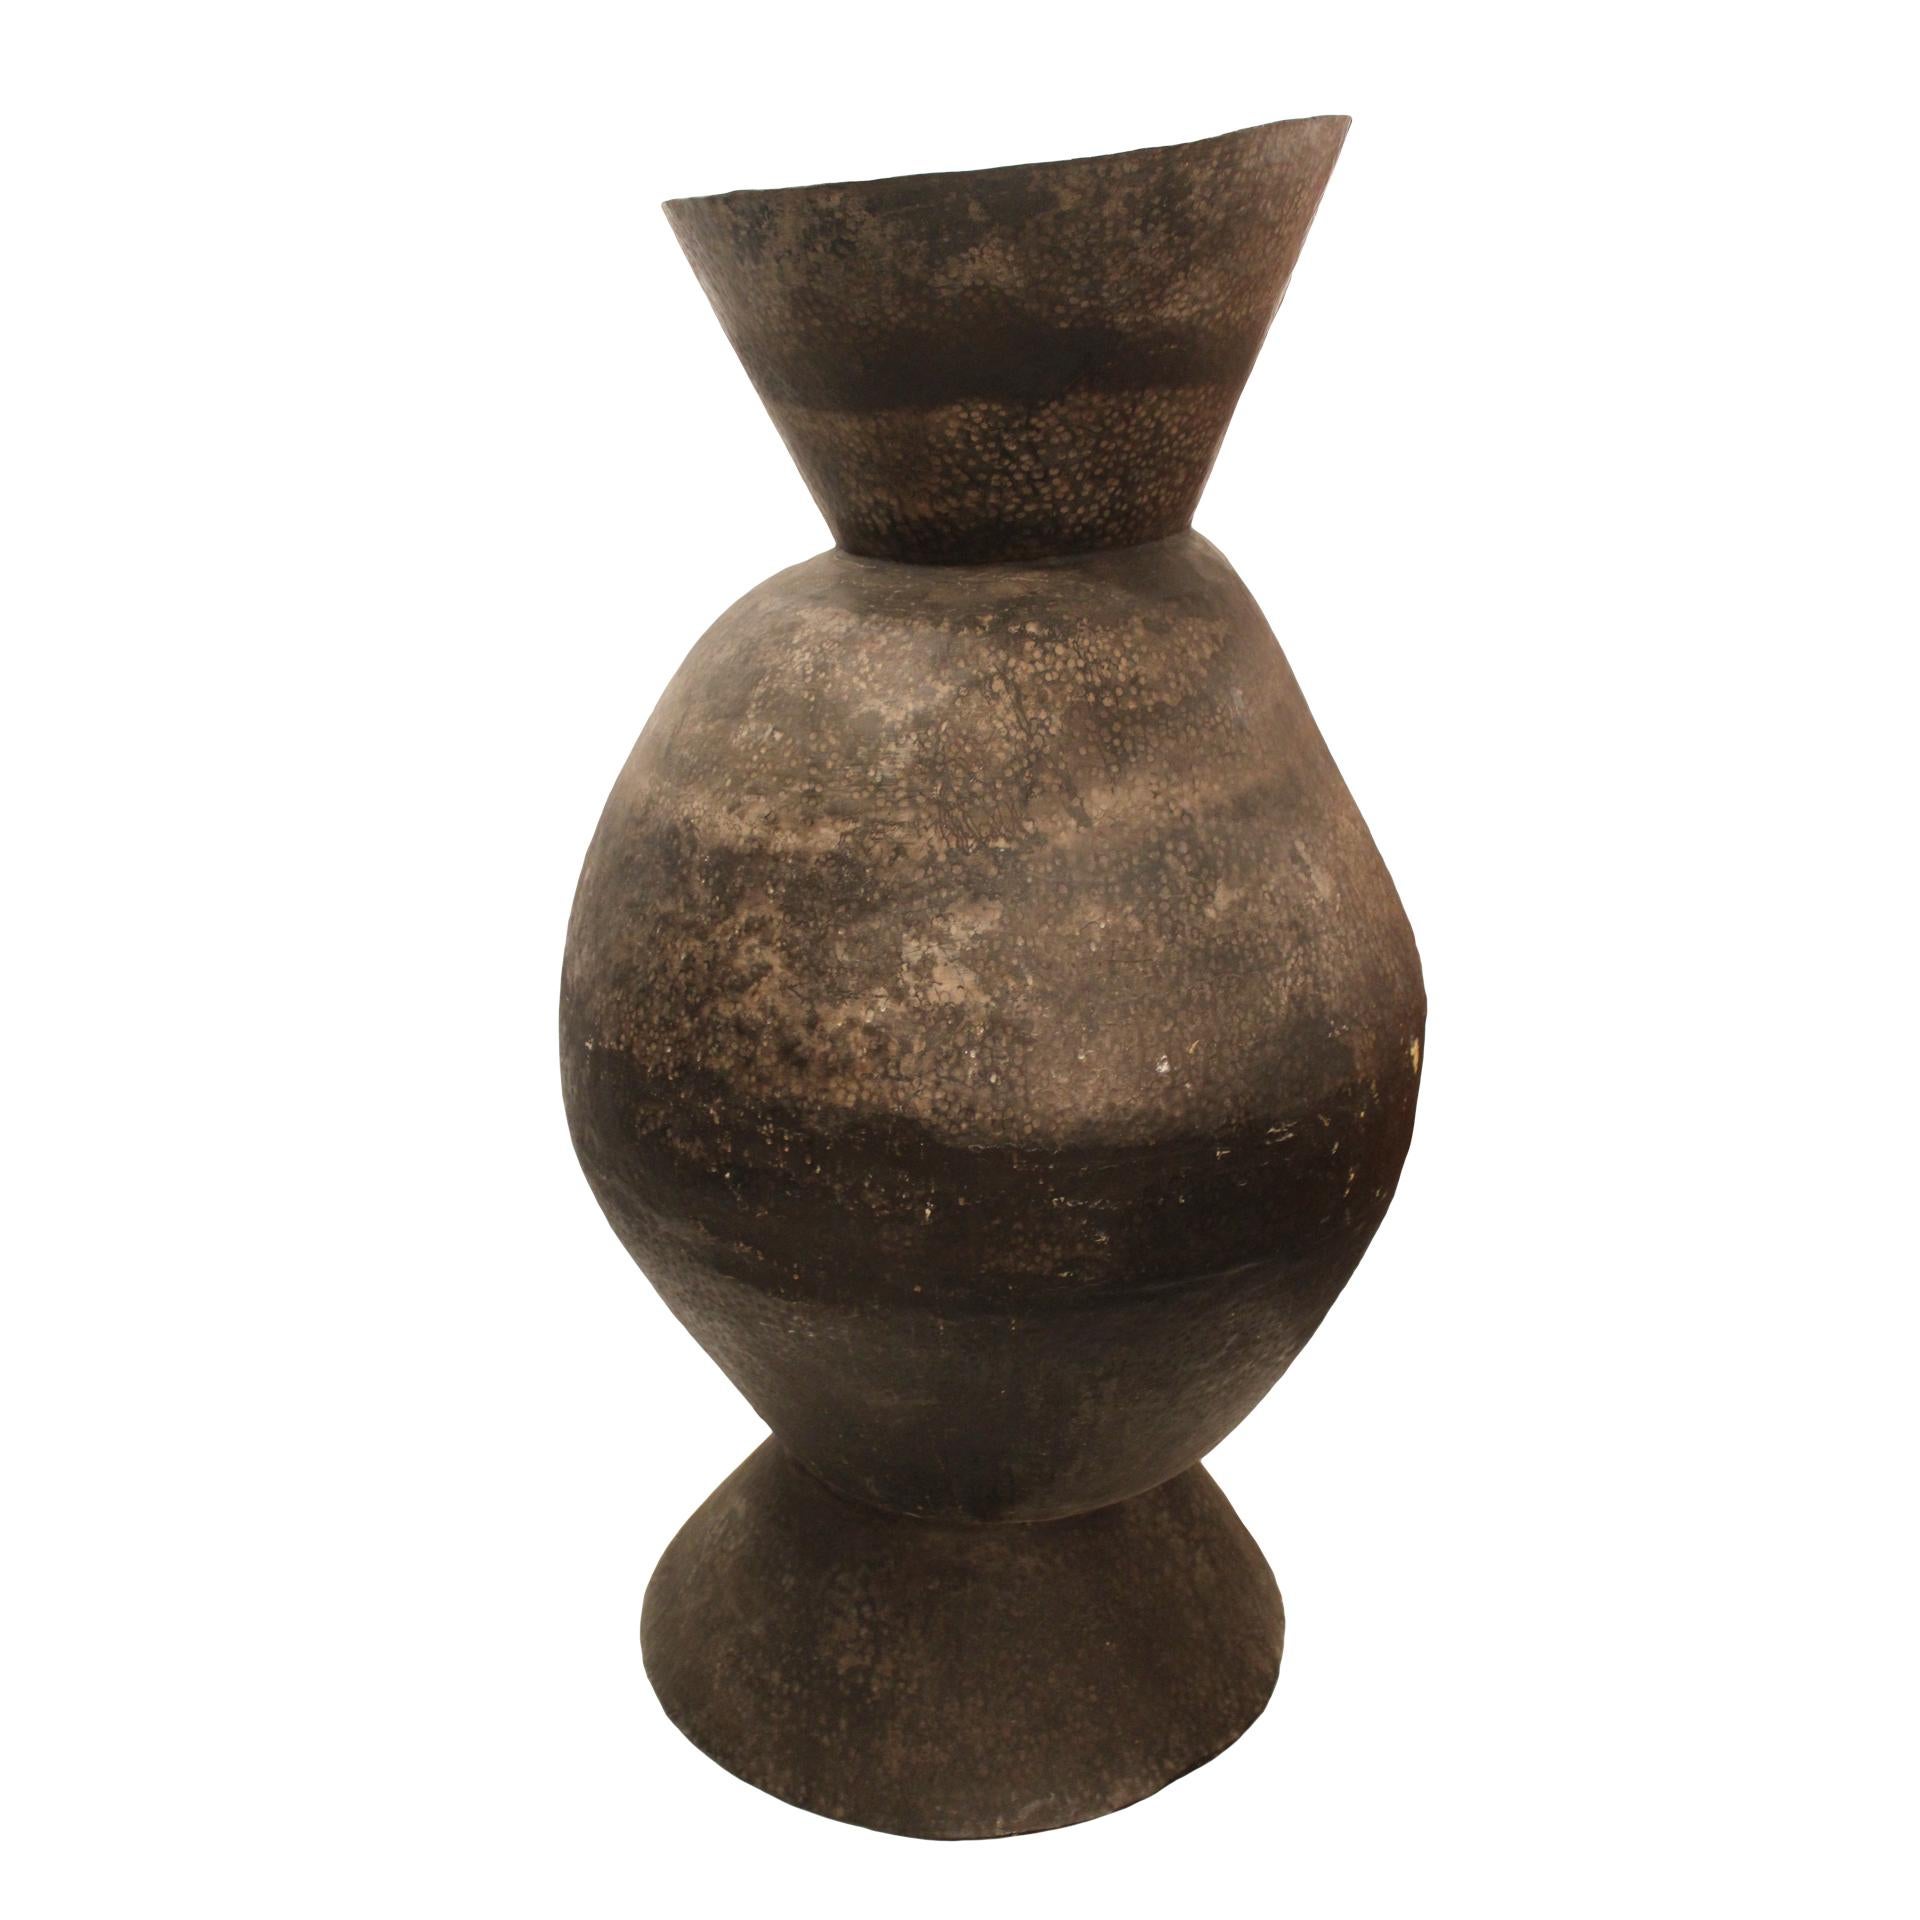 Seltenes skulpturales Gefäß aus dem volkstümlichen Handwerk Südmarokkos aus gehämmertem Metall. Marokko 1970er Jahre
